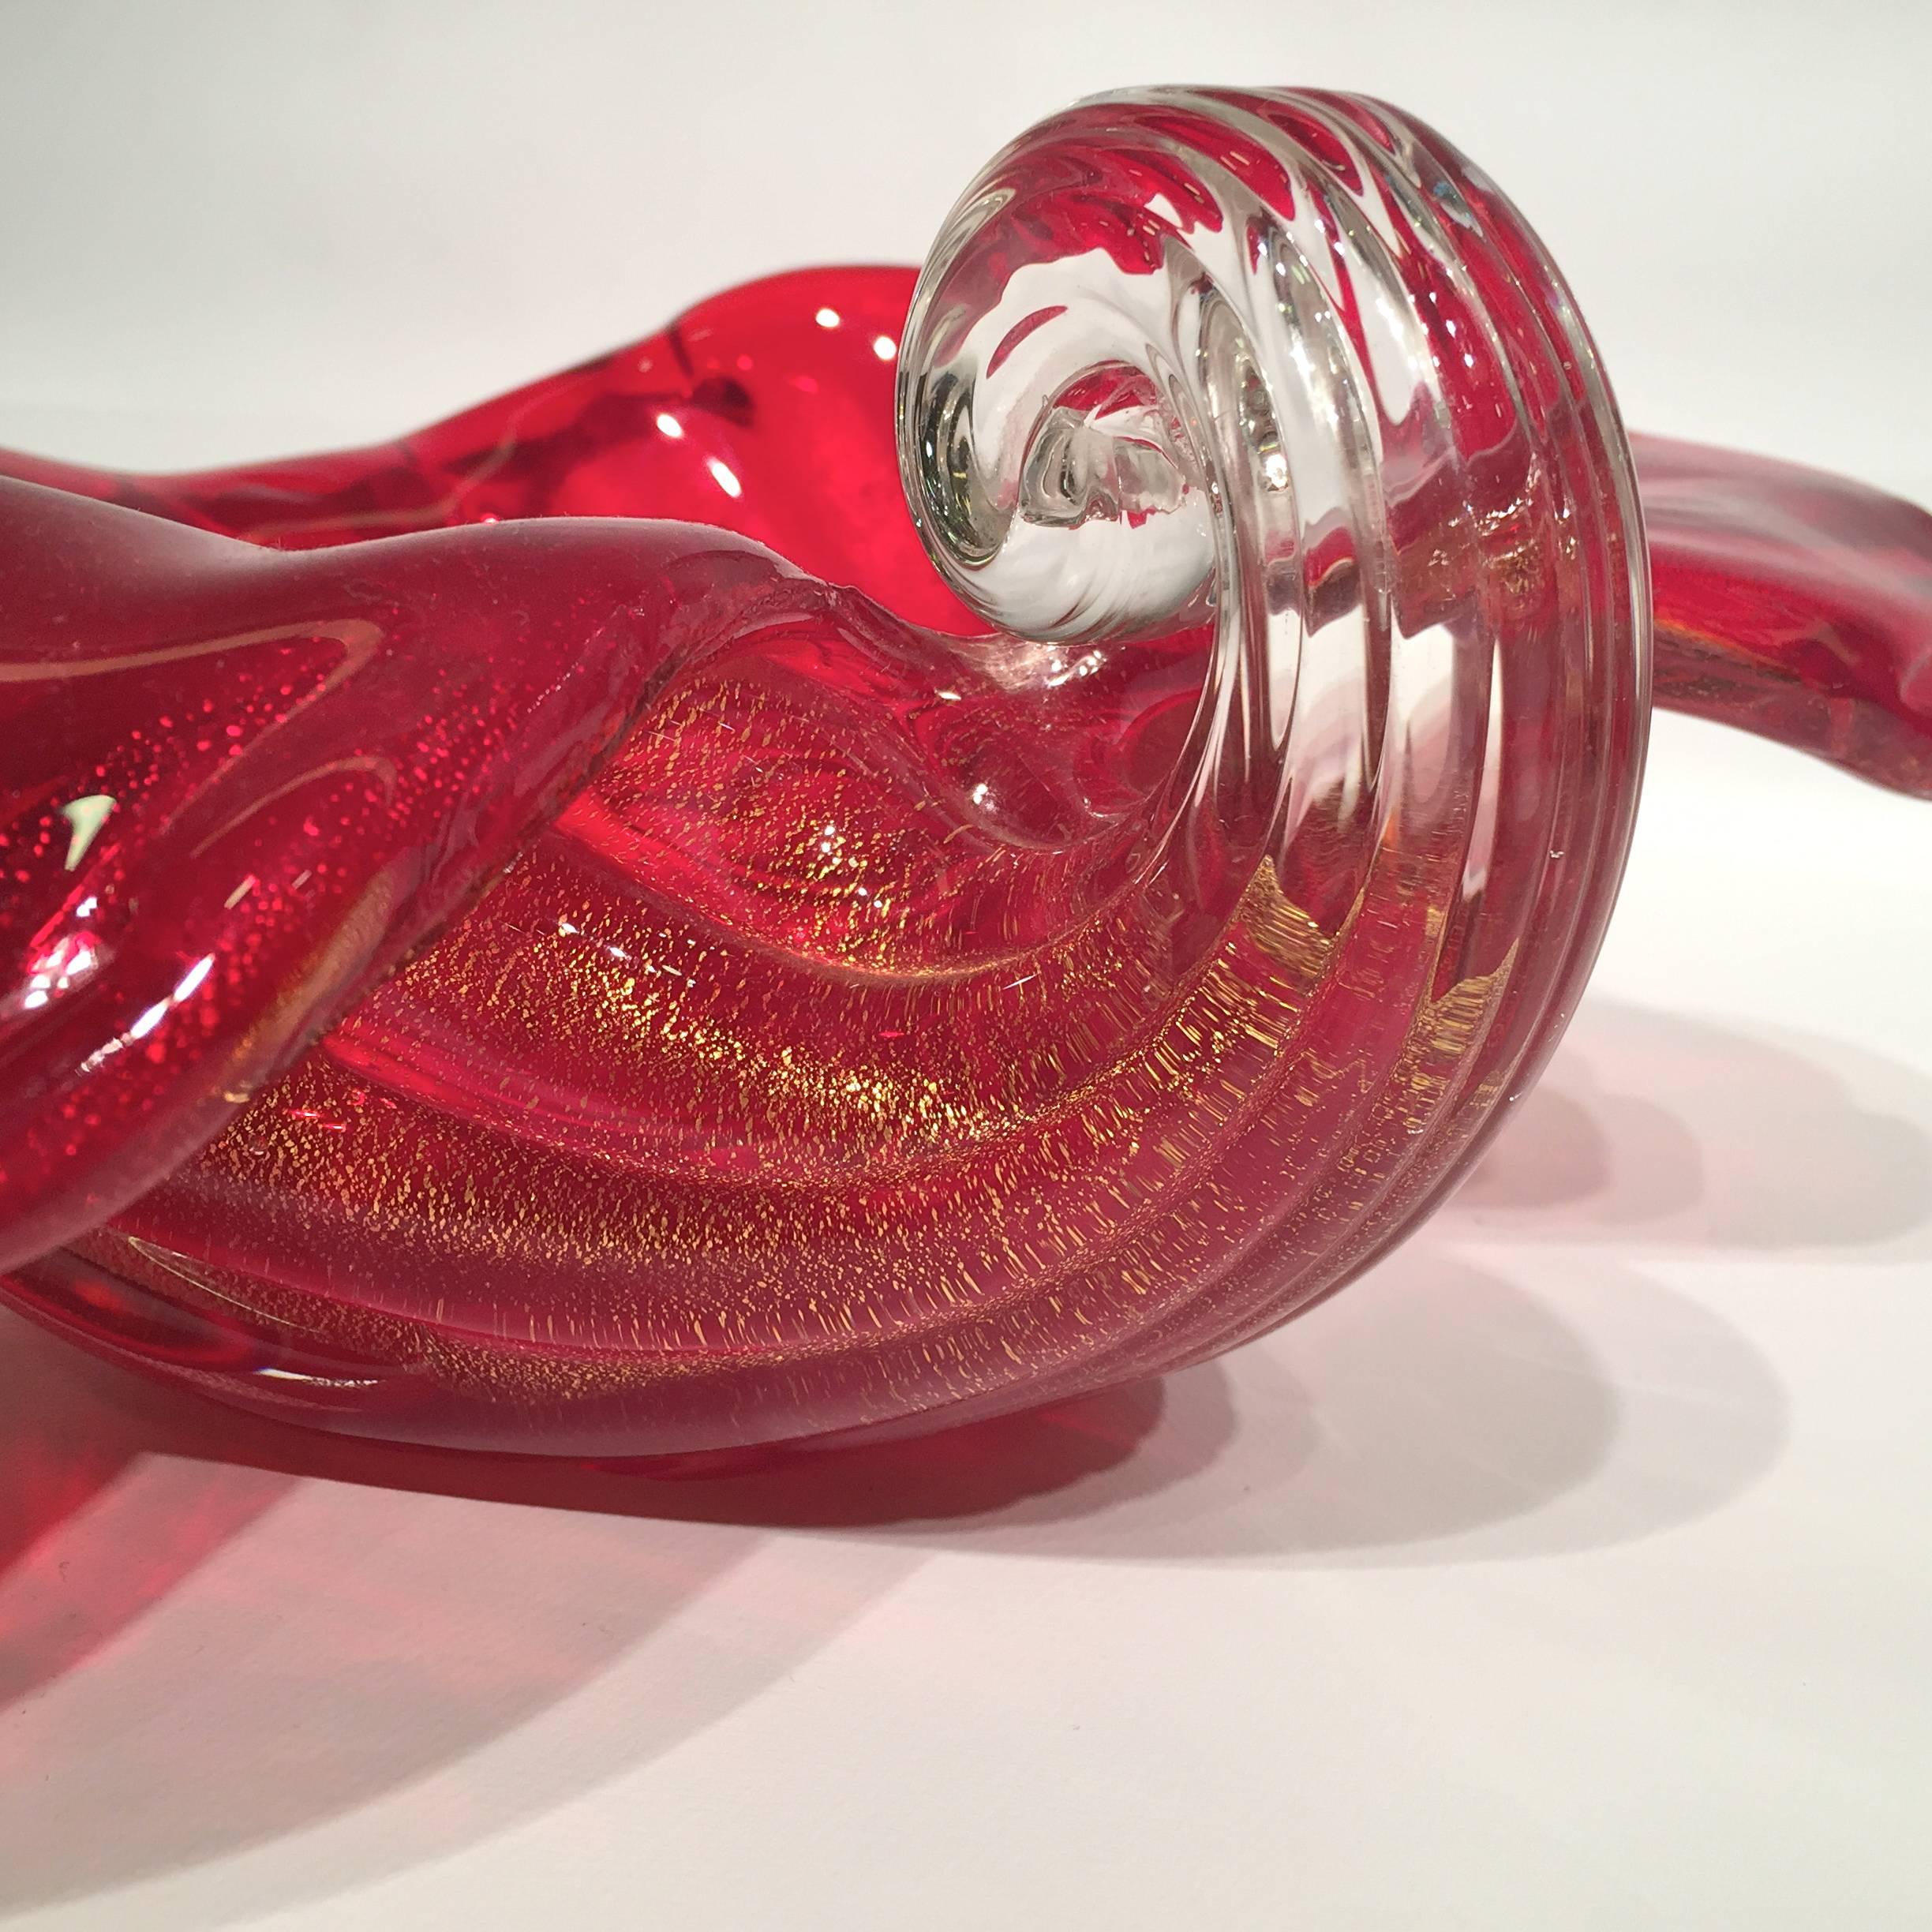 Appliqué ARCHIMEDE SEGUSO Cornucopia in Artistic Blown Glass of Murano, circa 1950 For Sale